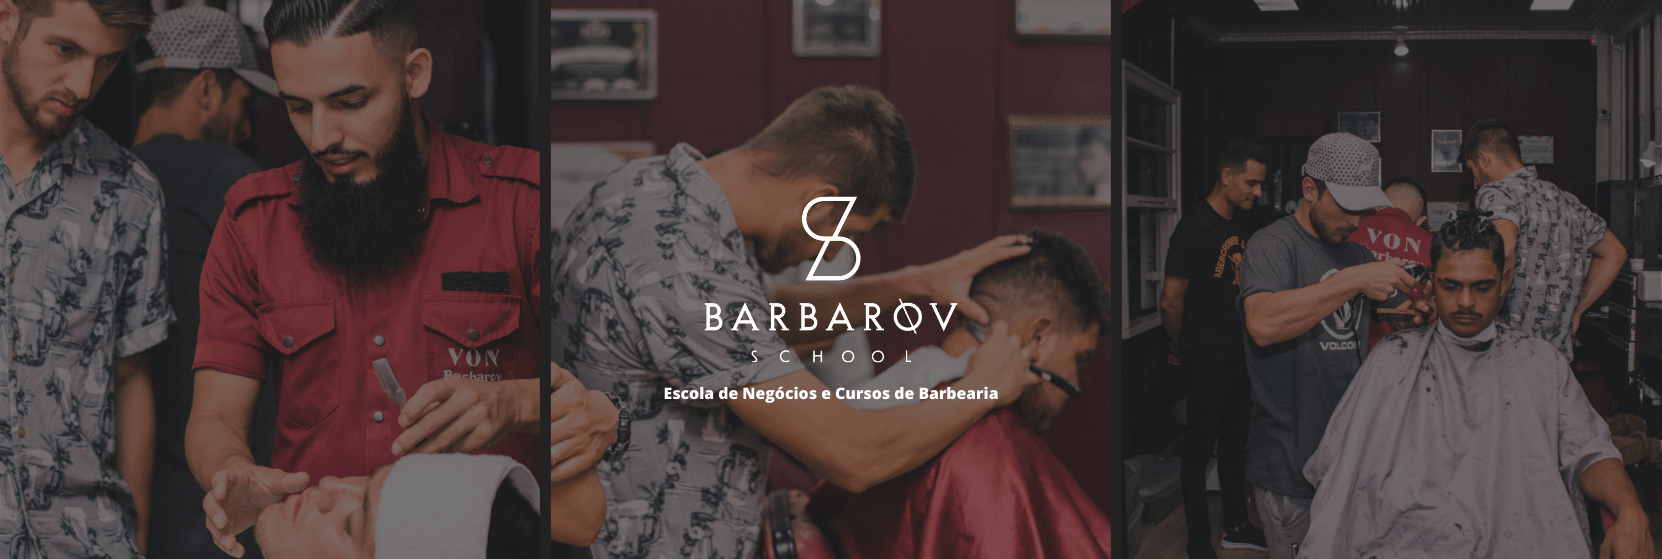 Curso de Barbeiro em Curitiba - Barbarov School